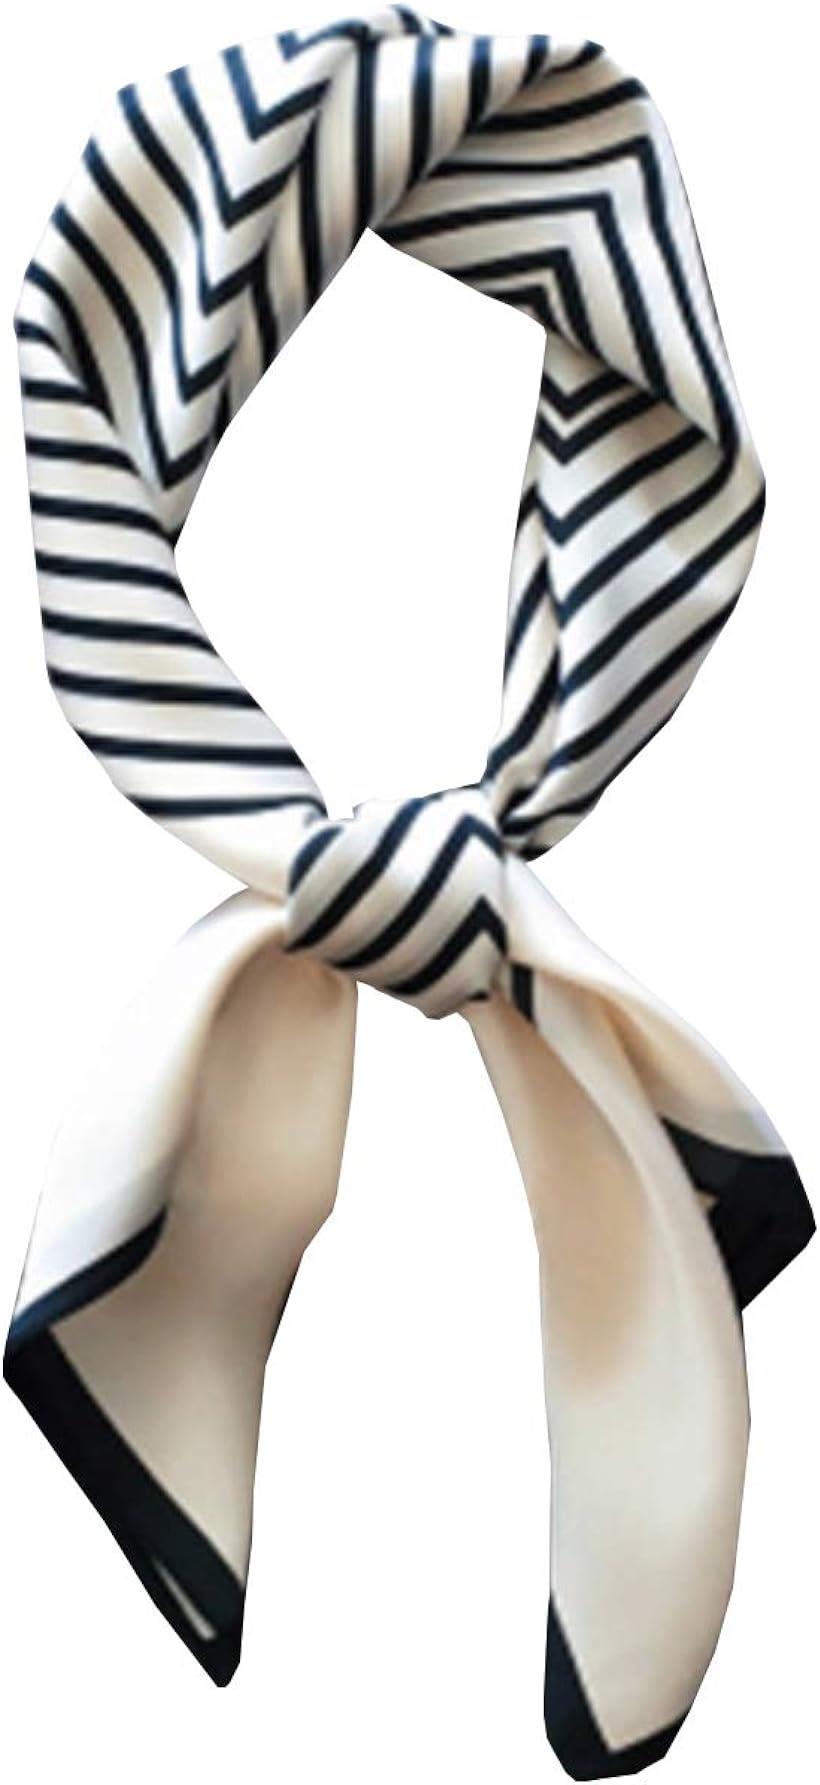 [ワン アンブ] スカーフ レディース 春 シルク調 正方形 薄手 UVカット お洒落 小物 70×70 cm ストライプホワイト